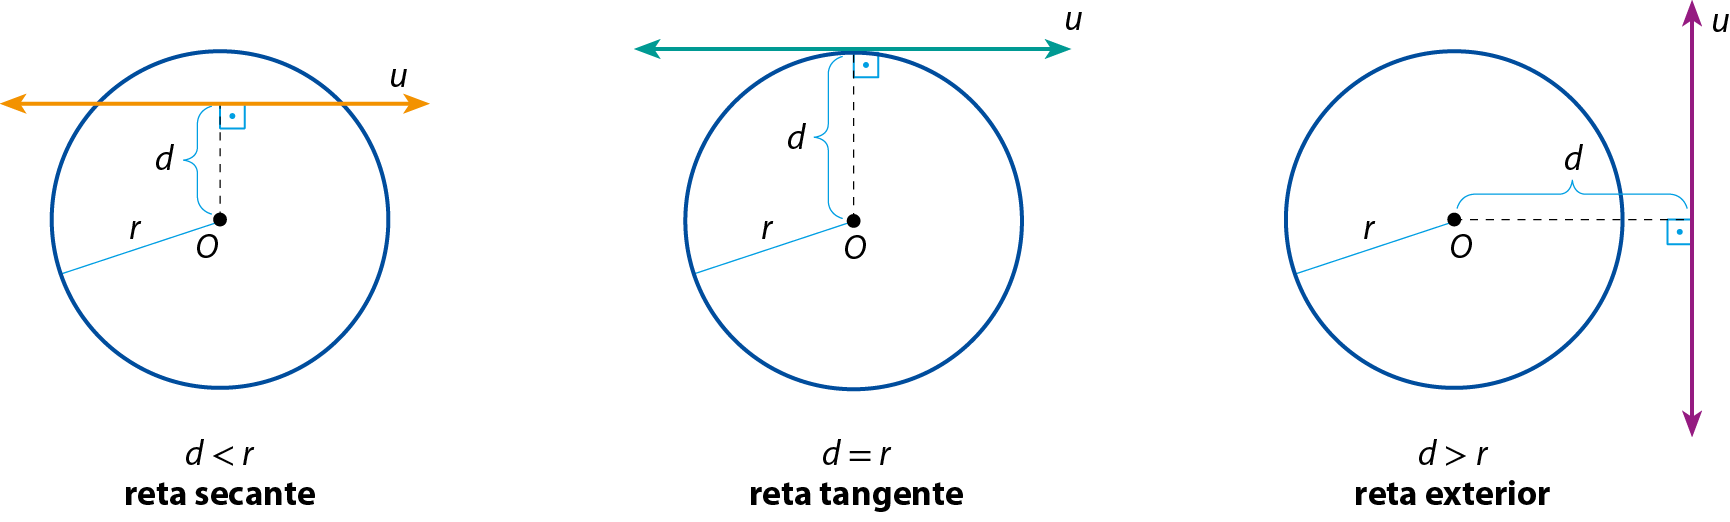 Ilustração. Circunferência de centro O. Raio de medida r. Reta u na horizontal na parte superior da circunferência, intersectando ela em dois pontos distintos. A distância de O à reta u mede d. Cota abaixo: d menor que r, reta secante.
Ao lado, circunferência de centro O. Raio de medida r. Reta u na horizontal tangente à circunferência. A distância de O à reta u mede d. Cota abaixo: d igual a r, reta tangente.
Ao lado, circunferência de centro O. Raio de medida r. Reta u na vertical à direita da circunferência. A distância de O à reta u mede d. Cota abaixo: d maior que r, reta exterior.